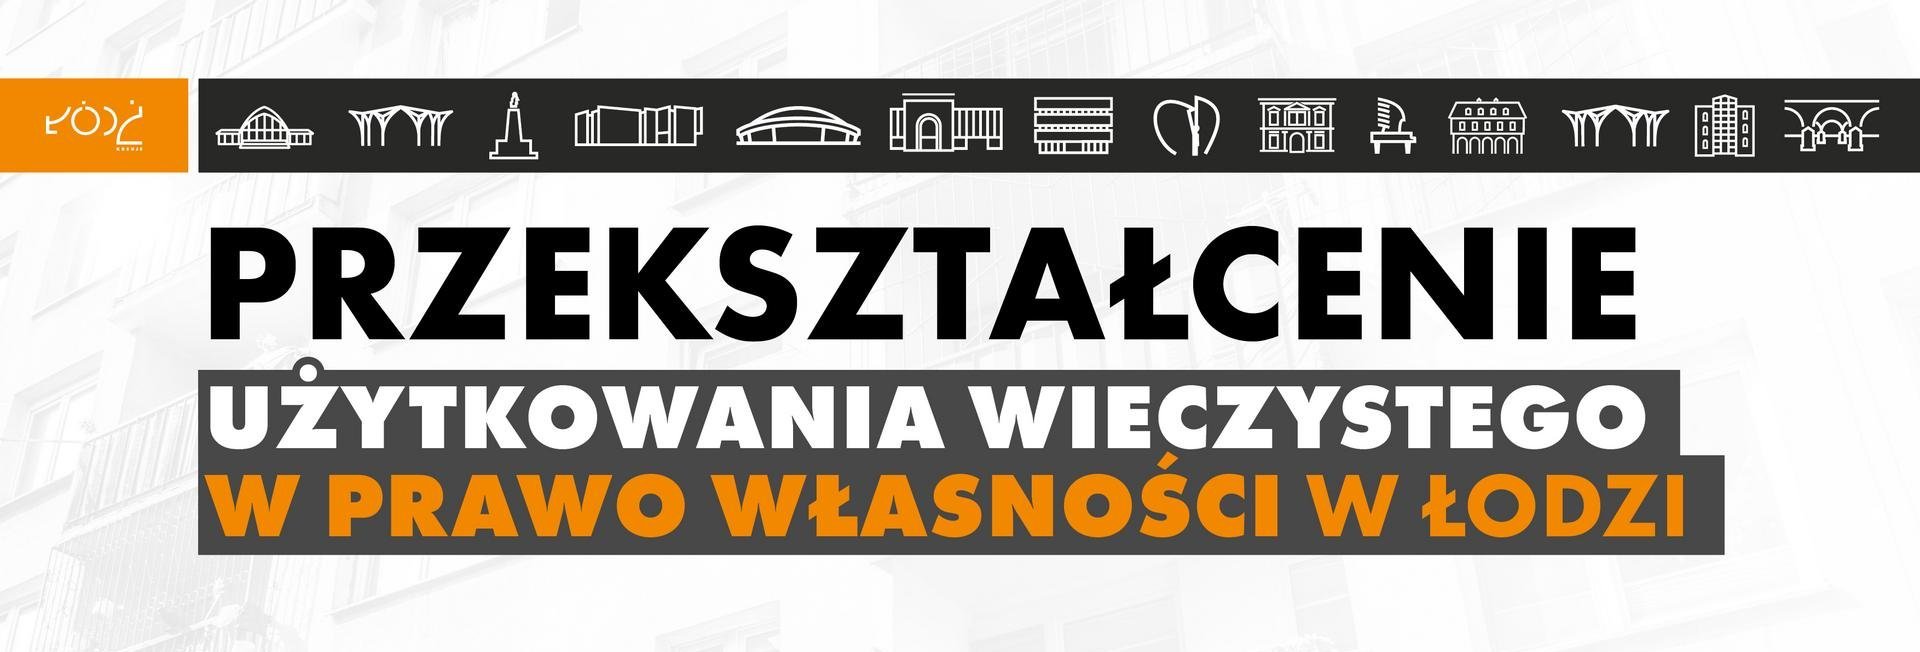 Przekształcenie użytkowania wieczystego w prawo własności w Łodzi 